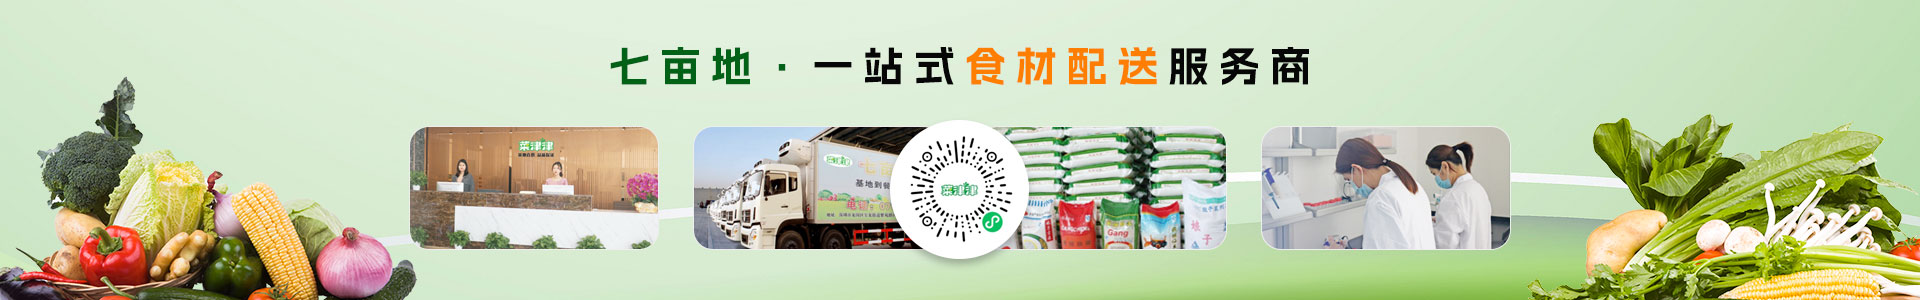 深圳市七亩地农产品实业有限公司-番薯叶配送